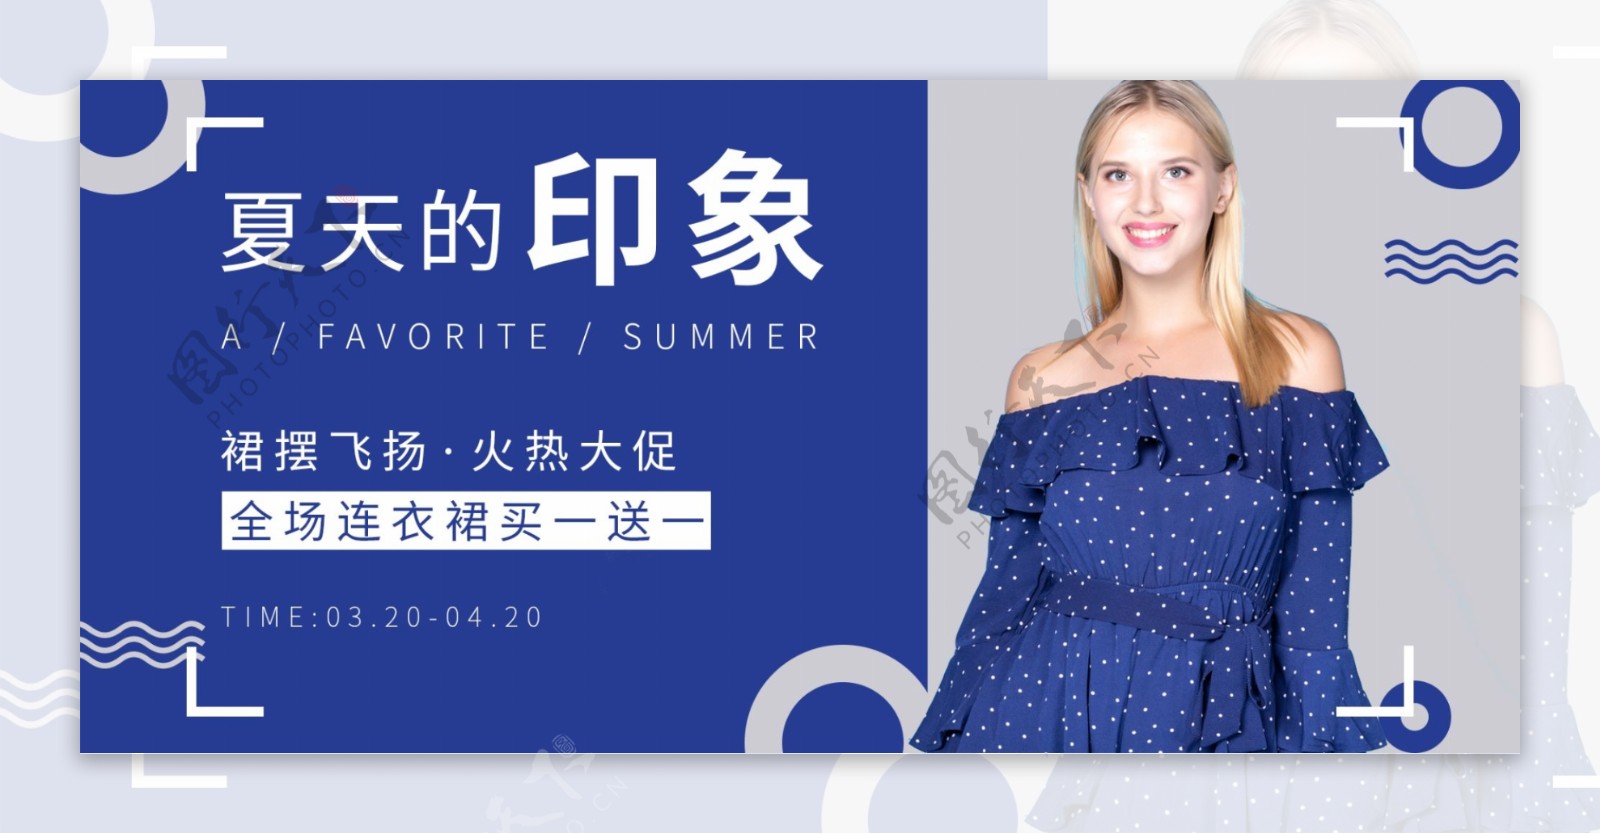 天猫淘宝简约时尚女装夏季促销banner